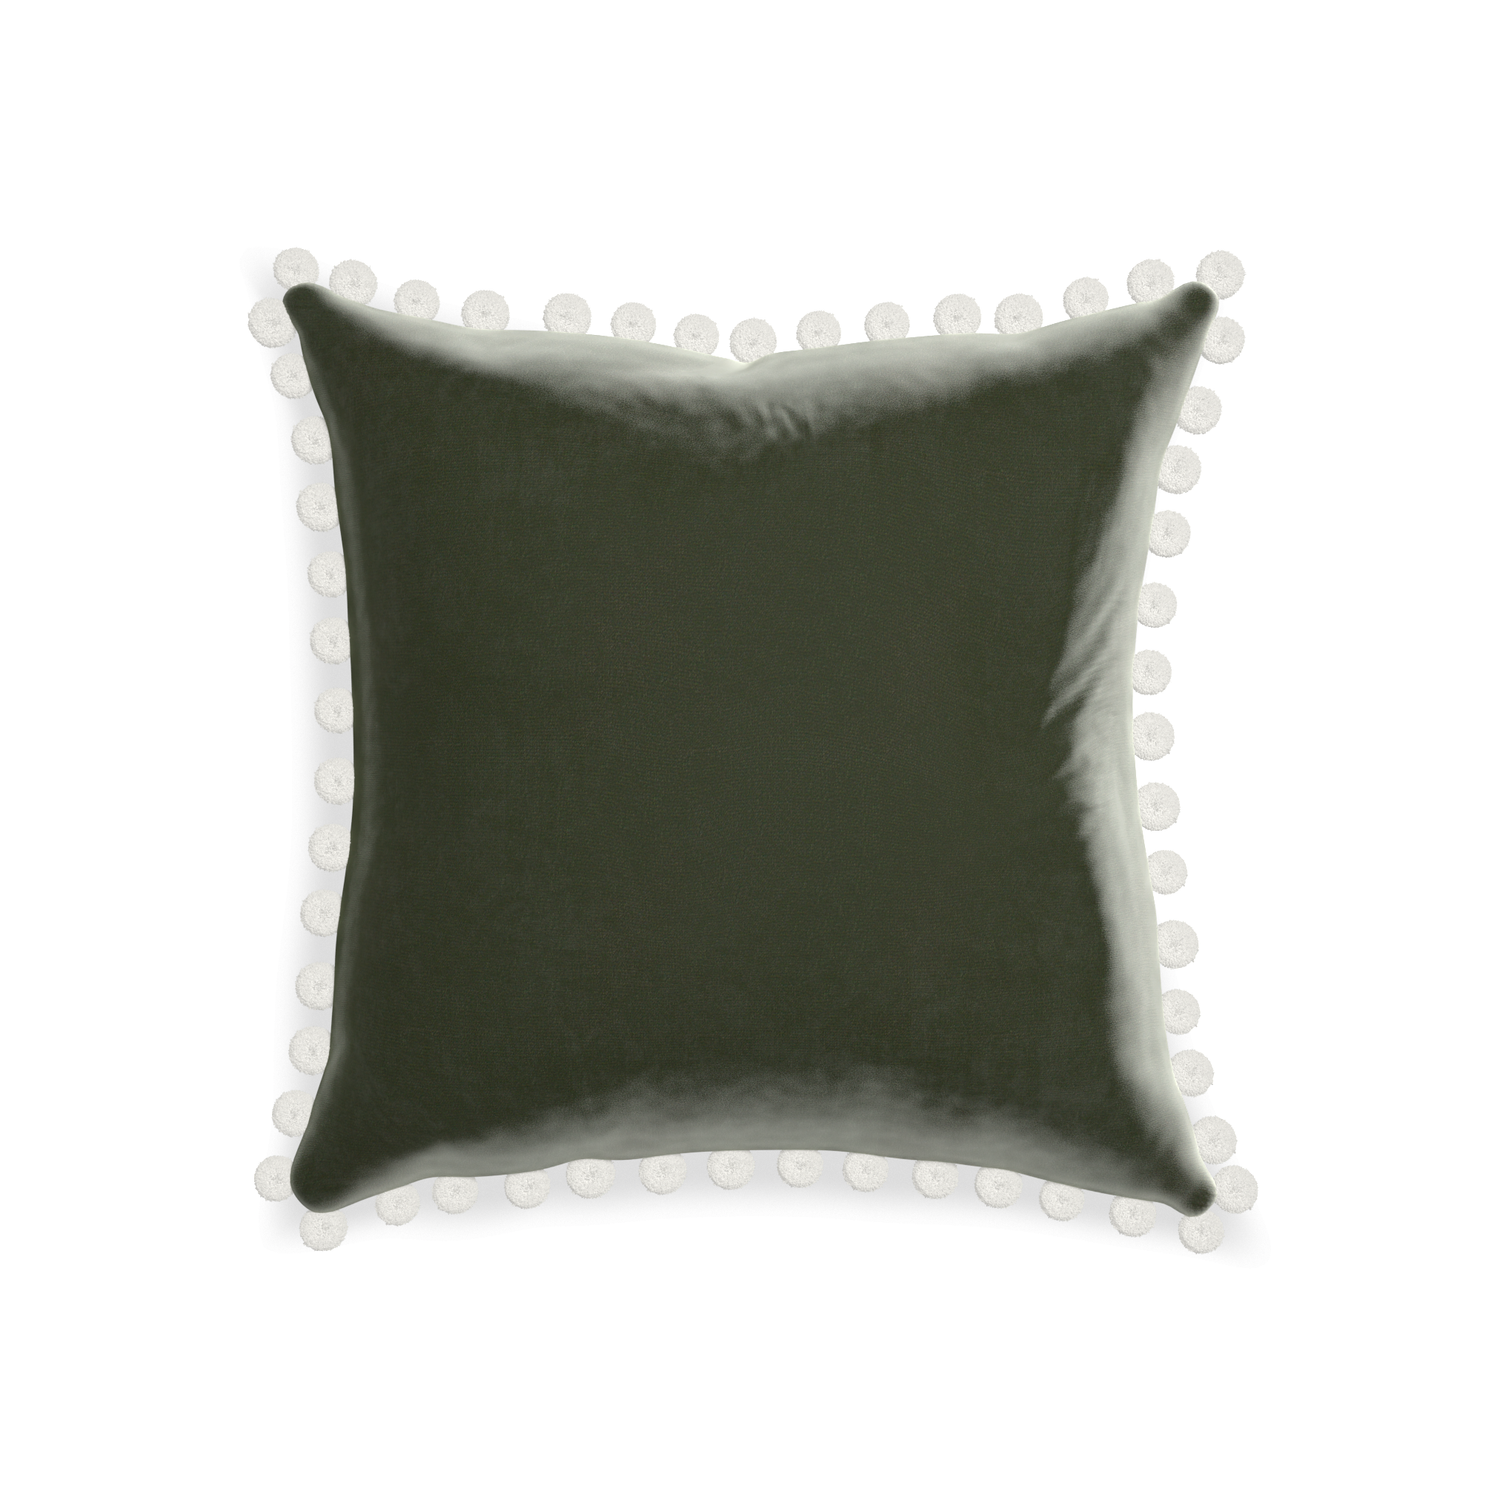 20-square fern velvet custom pillow with snow pom pom on white background